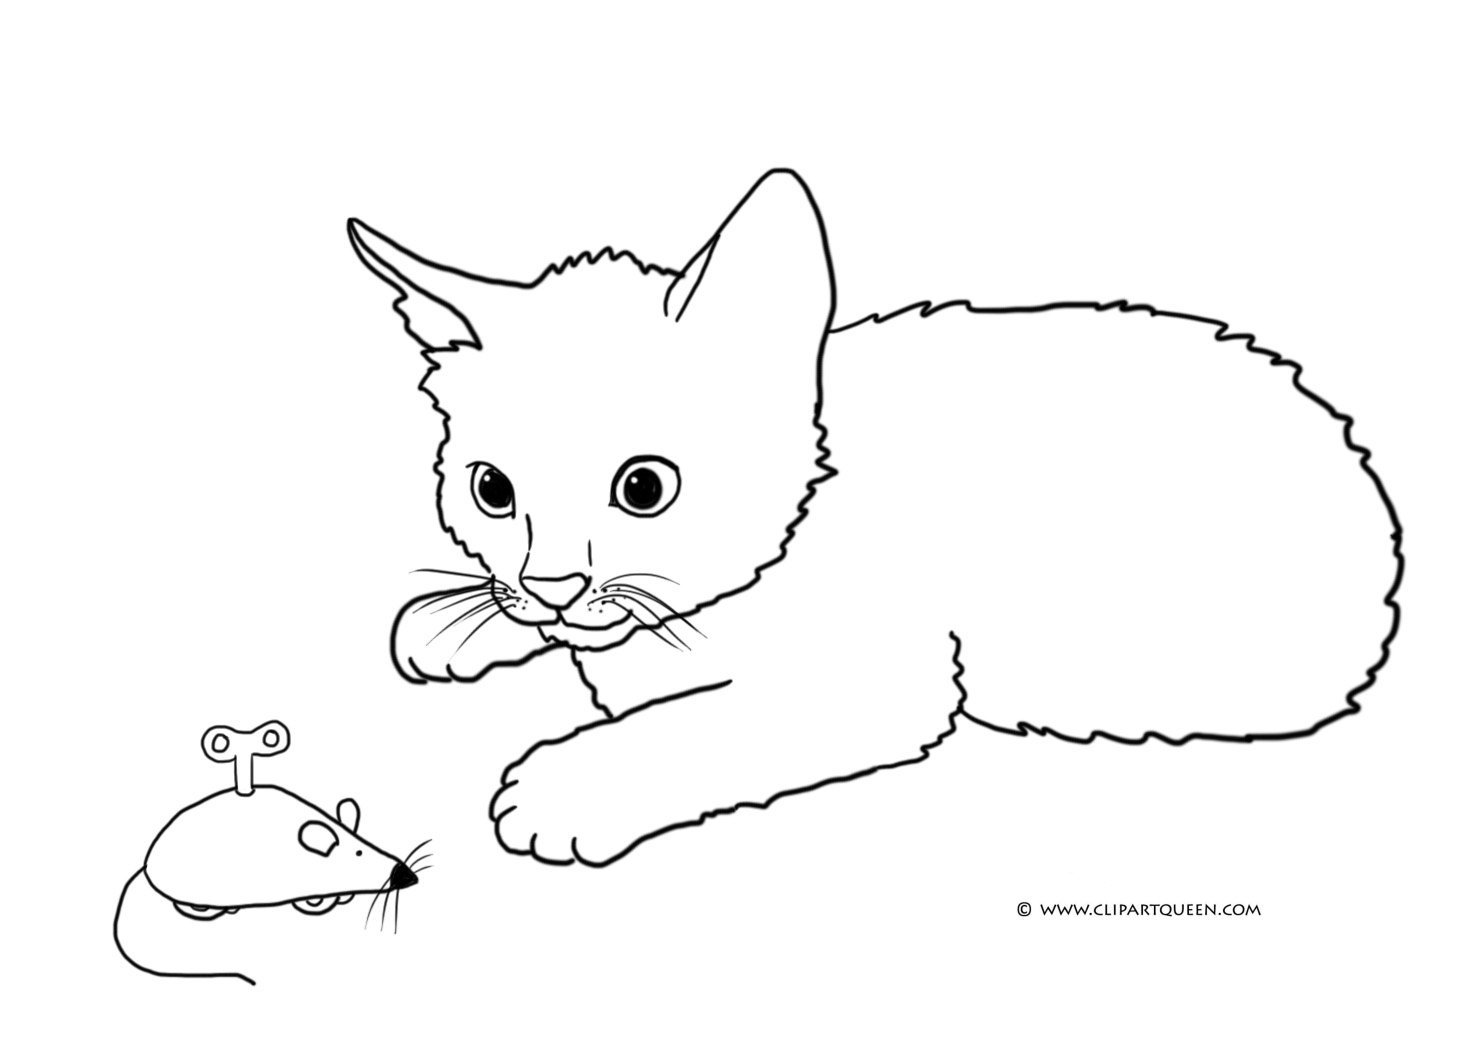 Коврик для мыши детская раскраска Кошки мышки купить на апекс124.рф | 